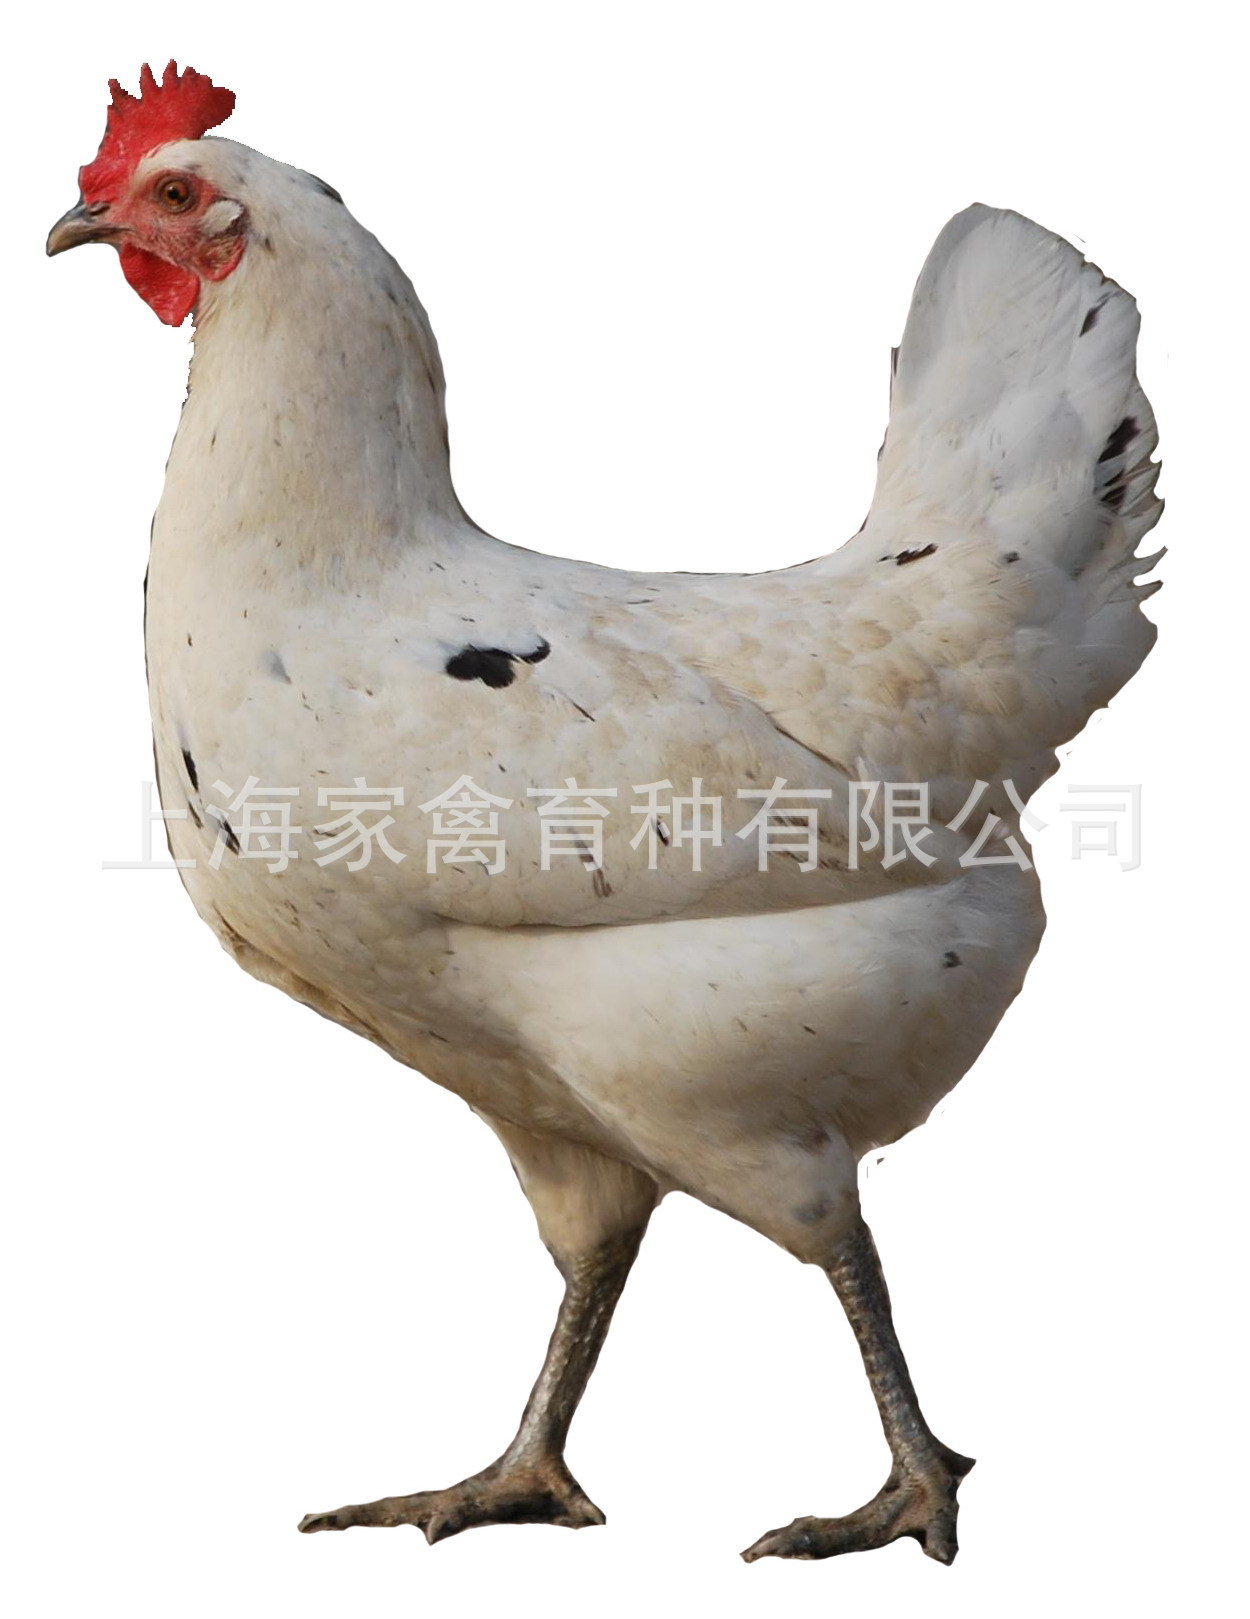 厂家热供 商品代 新杨绿 绿壳蛋鸡 鸡苗健康优质量大从优欢迎订购